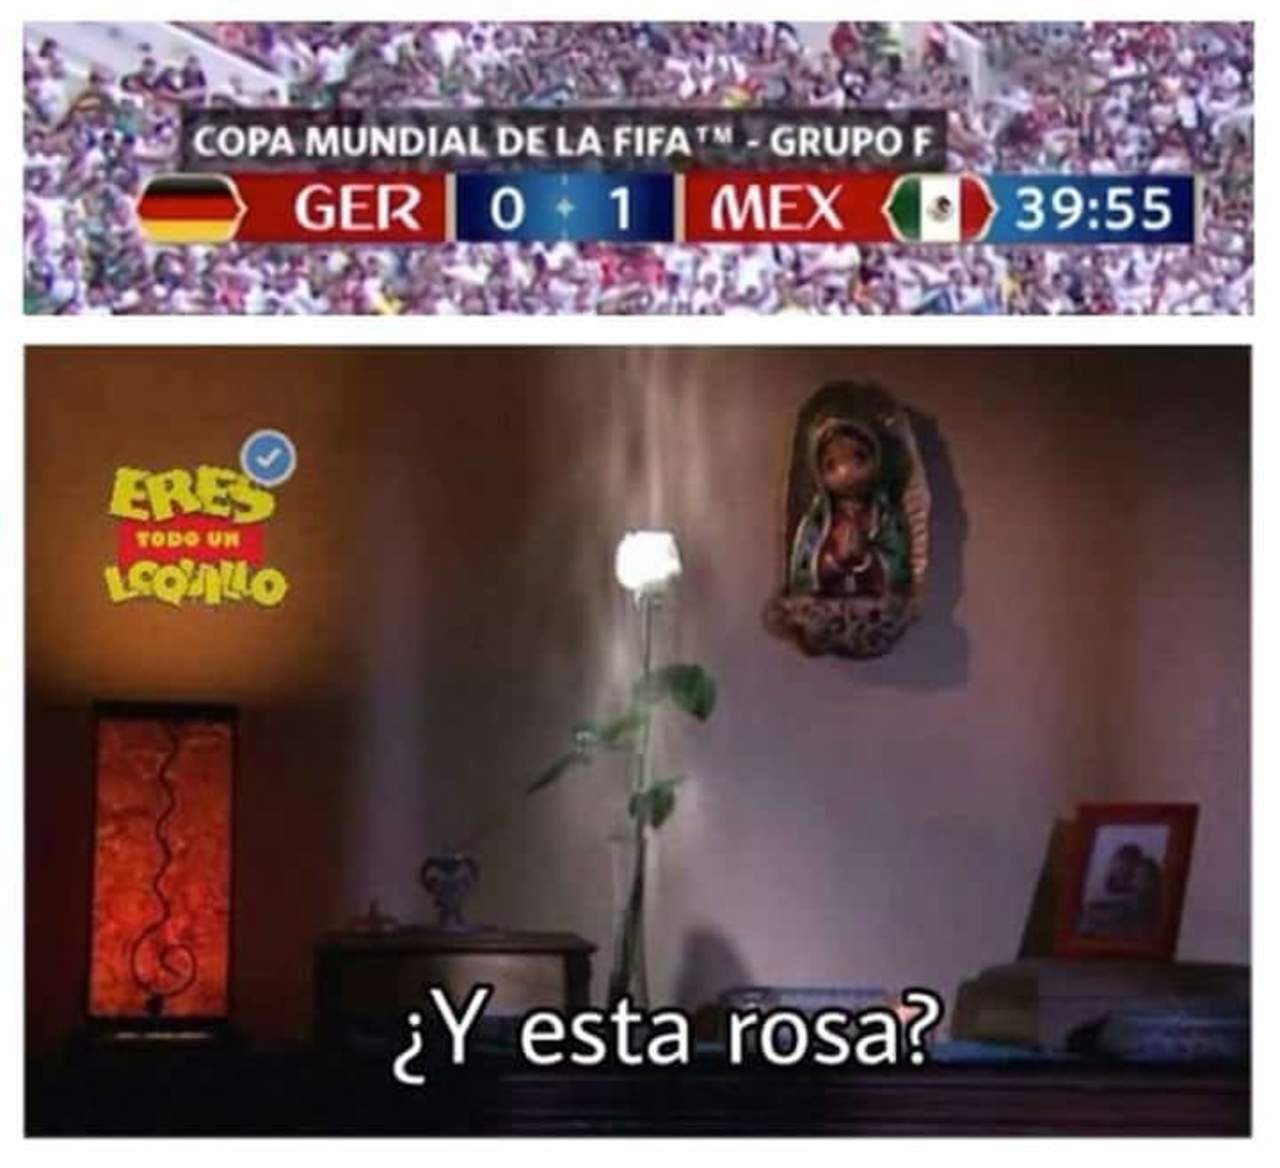 En redes sociales el triunfo de México se vivió con humor. (ESPECIAL)